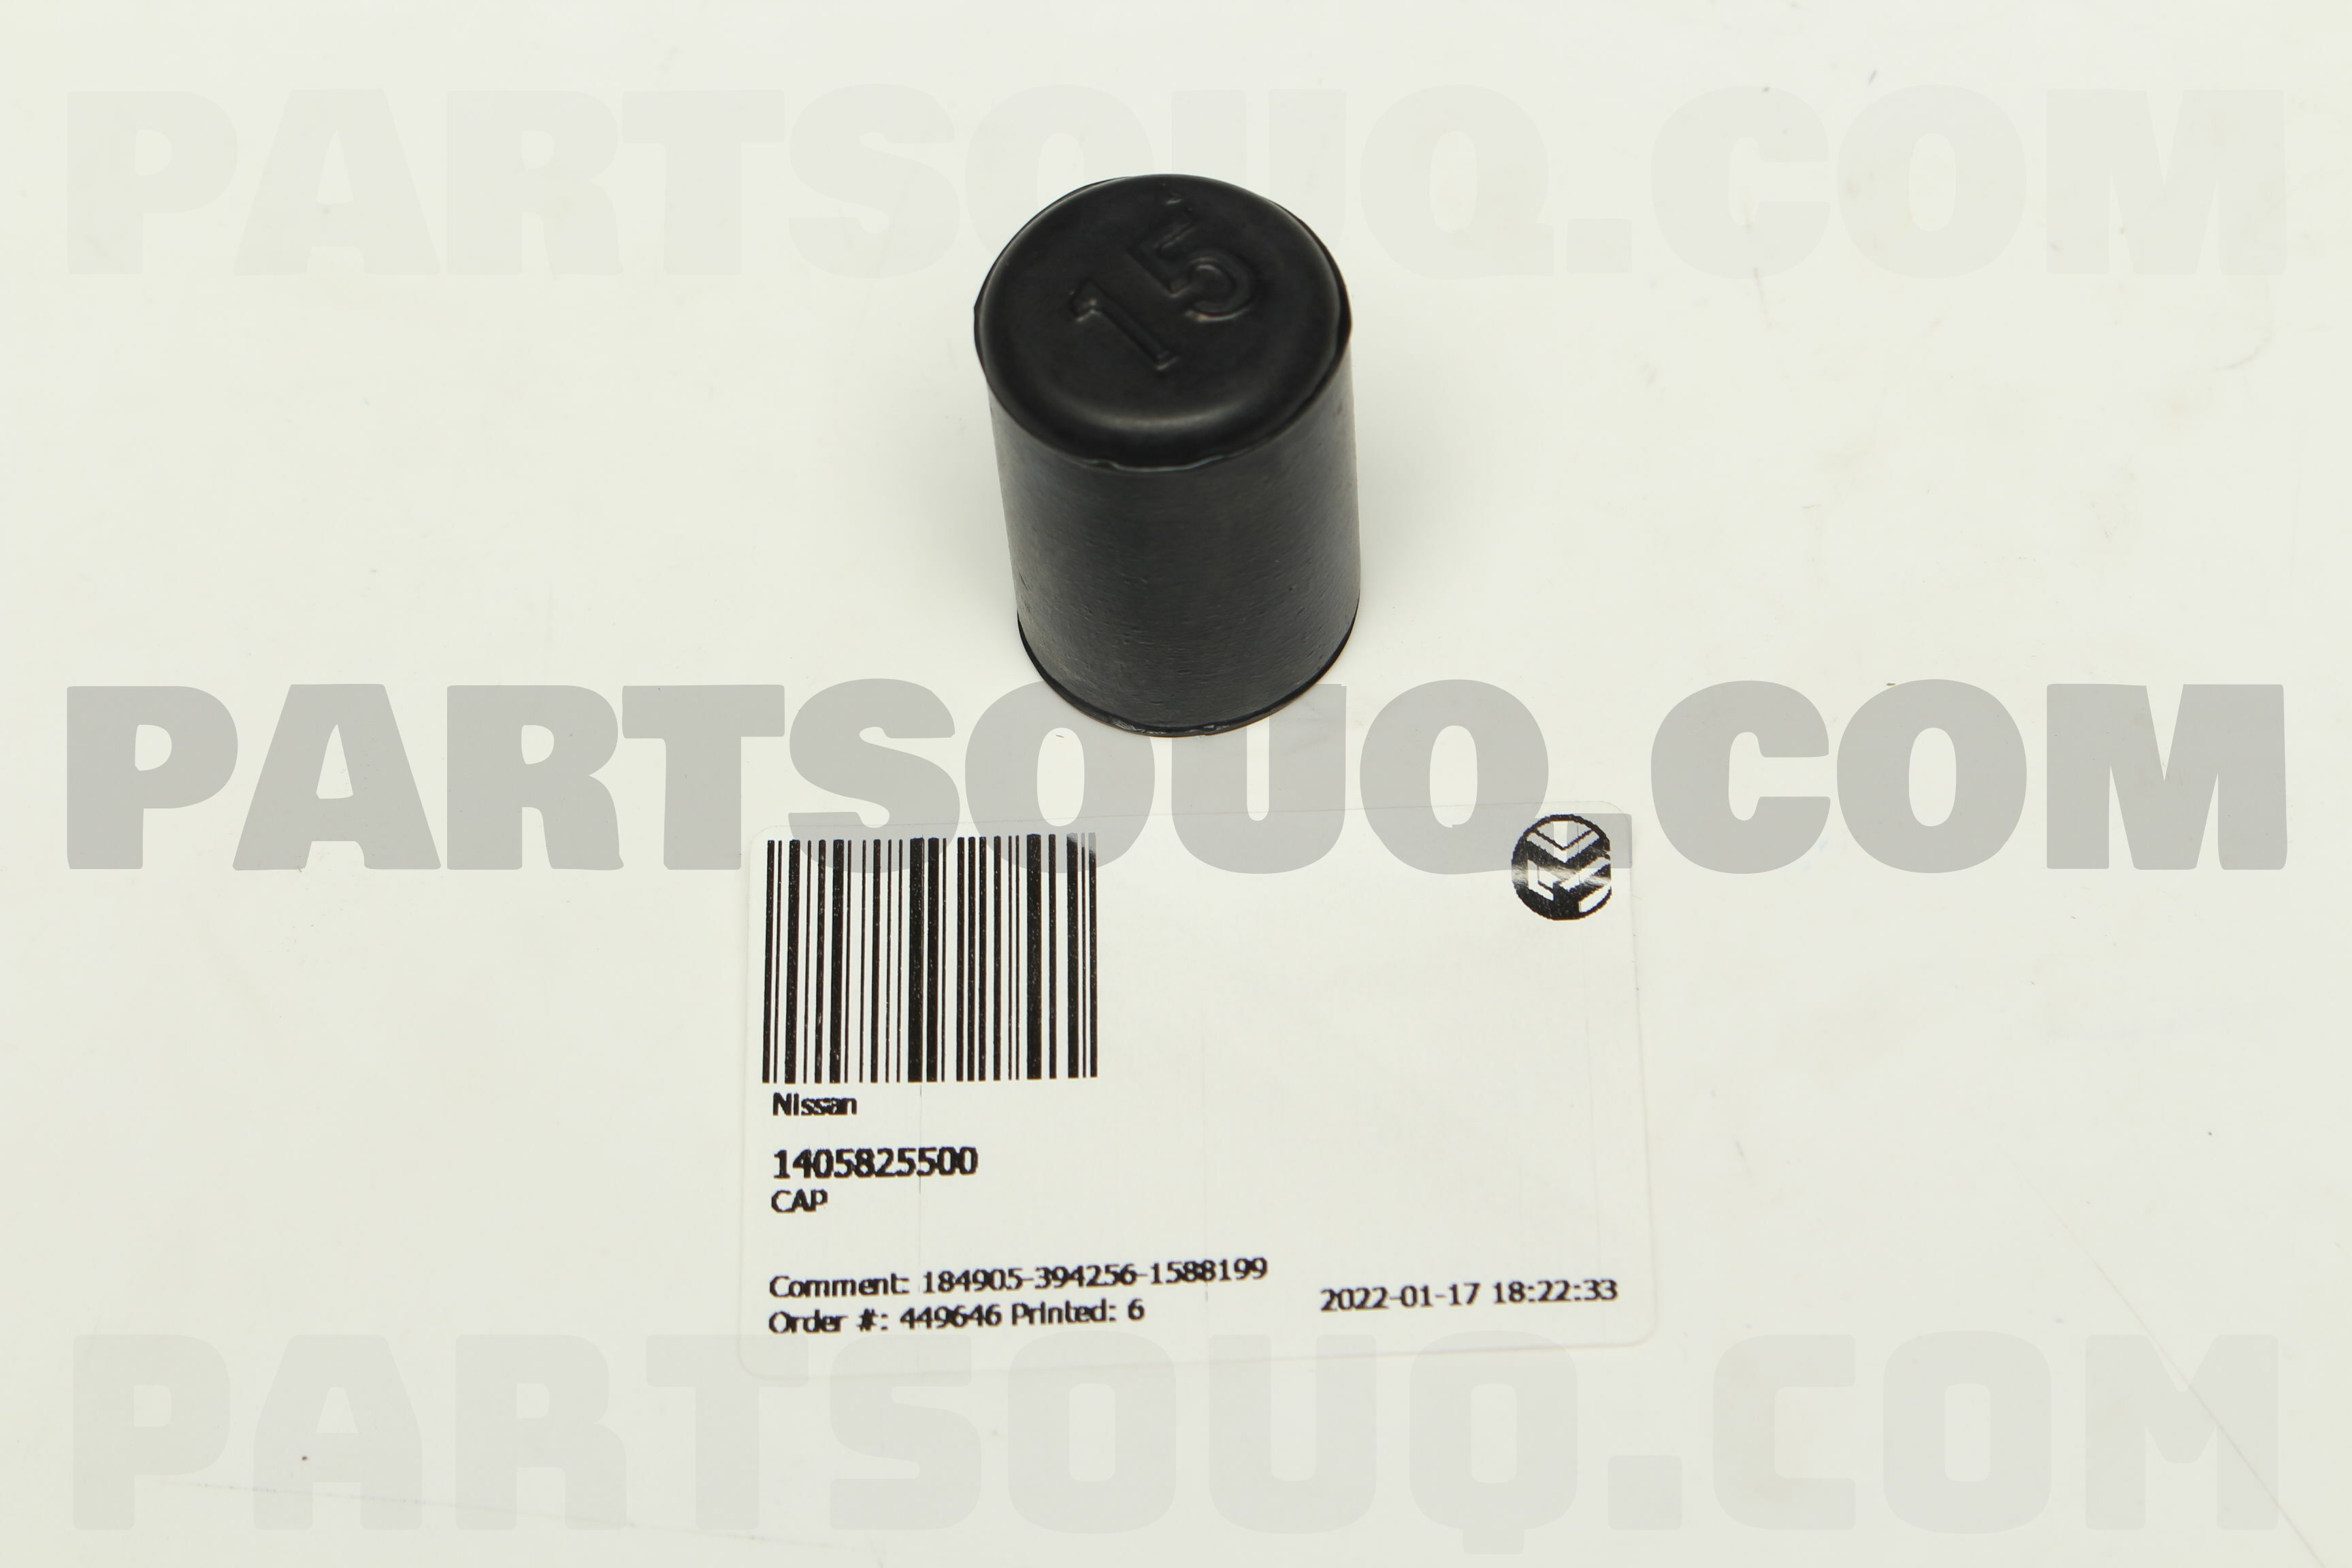 CAP 1405825500 | Nissan Parts | PartSouq